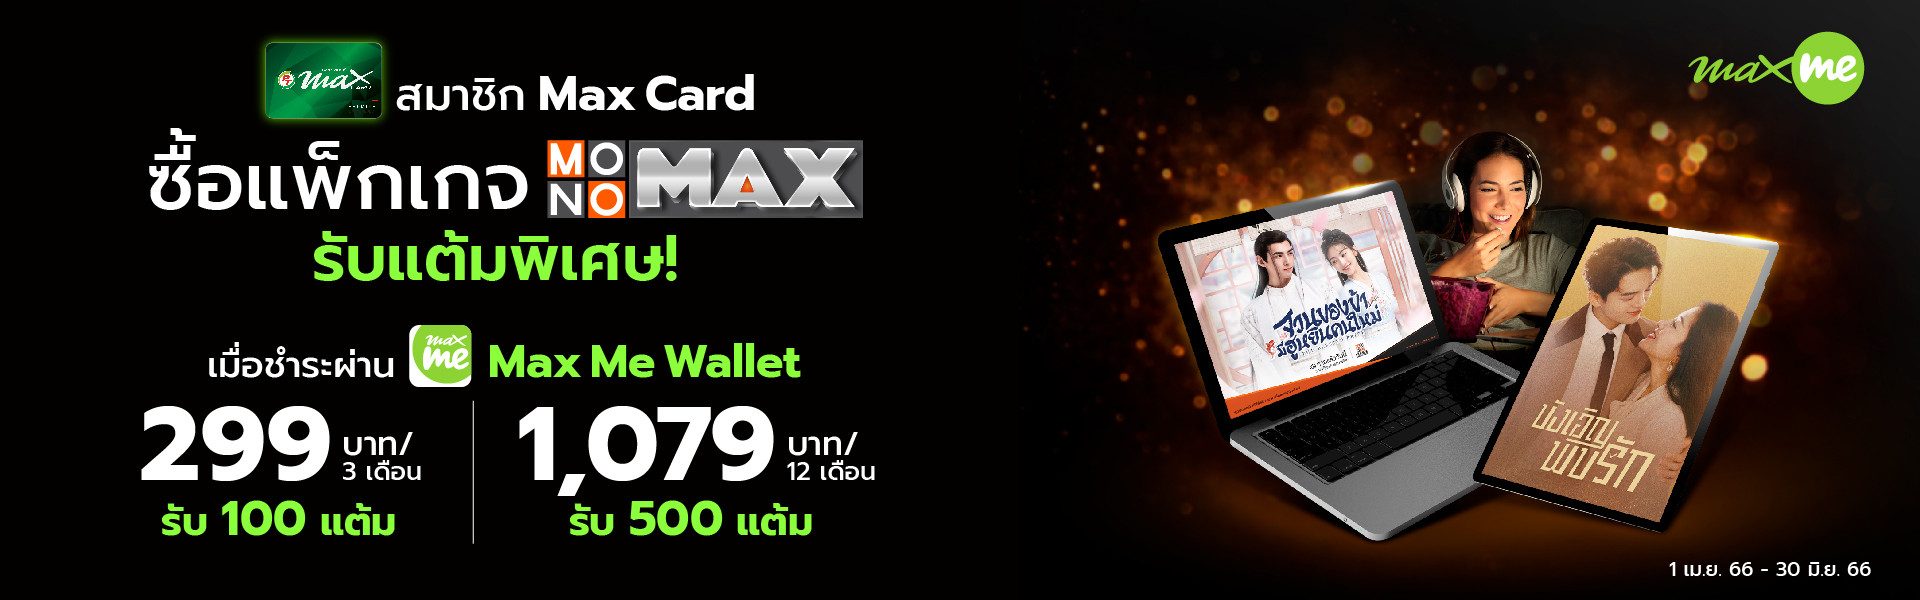 สมาชิก Max Card ซื้อแพ็กเกจ MONOMAX รายครั้ง